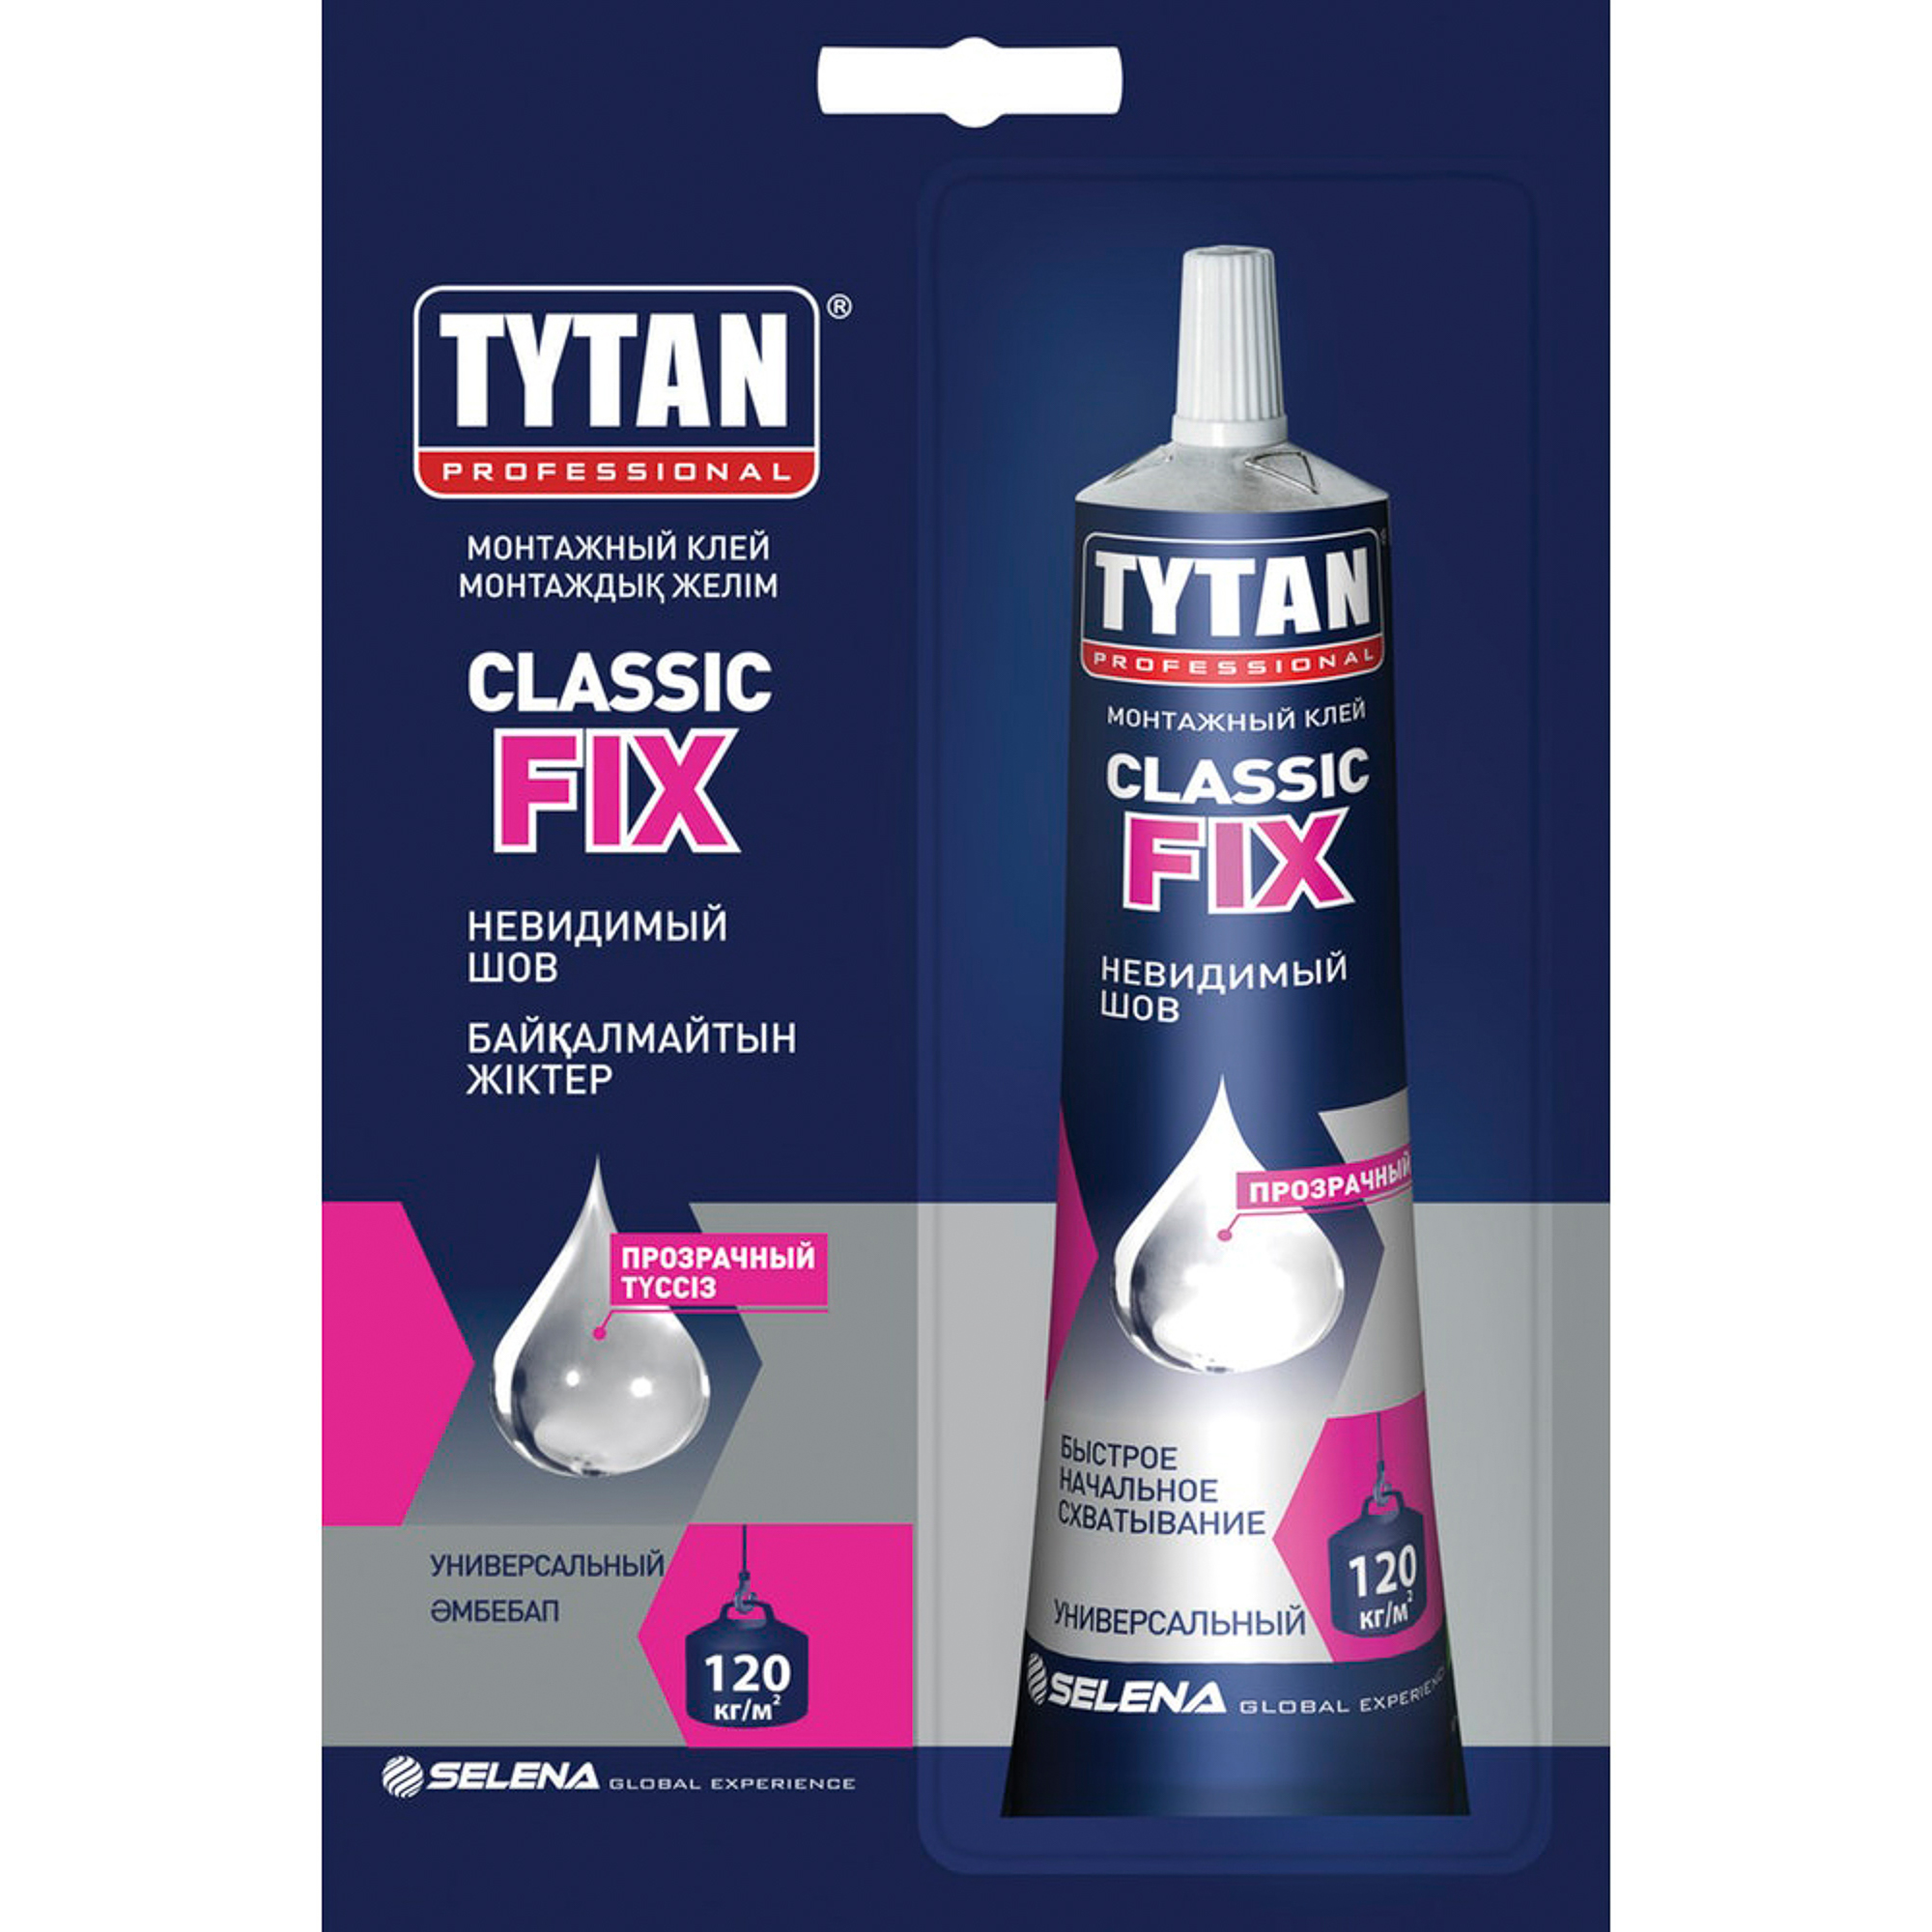 Tytan classic fix прозрачный. Монтажный клей Tytan professional Classic Fix, прозрачный. Tytan Classic Fix монтажный клей. Монтажный клей Титан фикс. Клей монтажный Tytan Classic Fix, 280 мл, прозрачный.